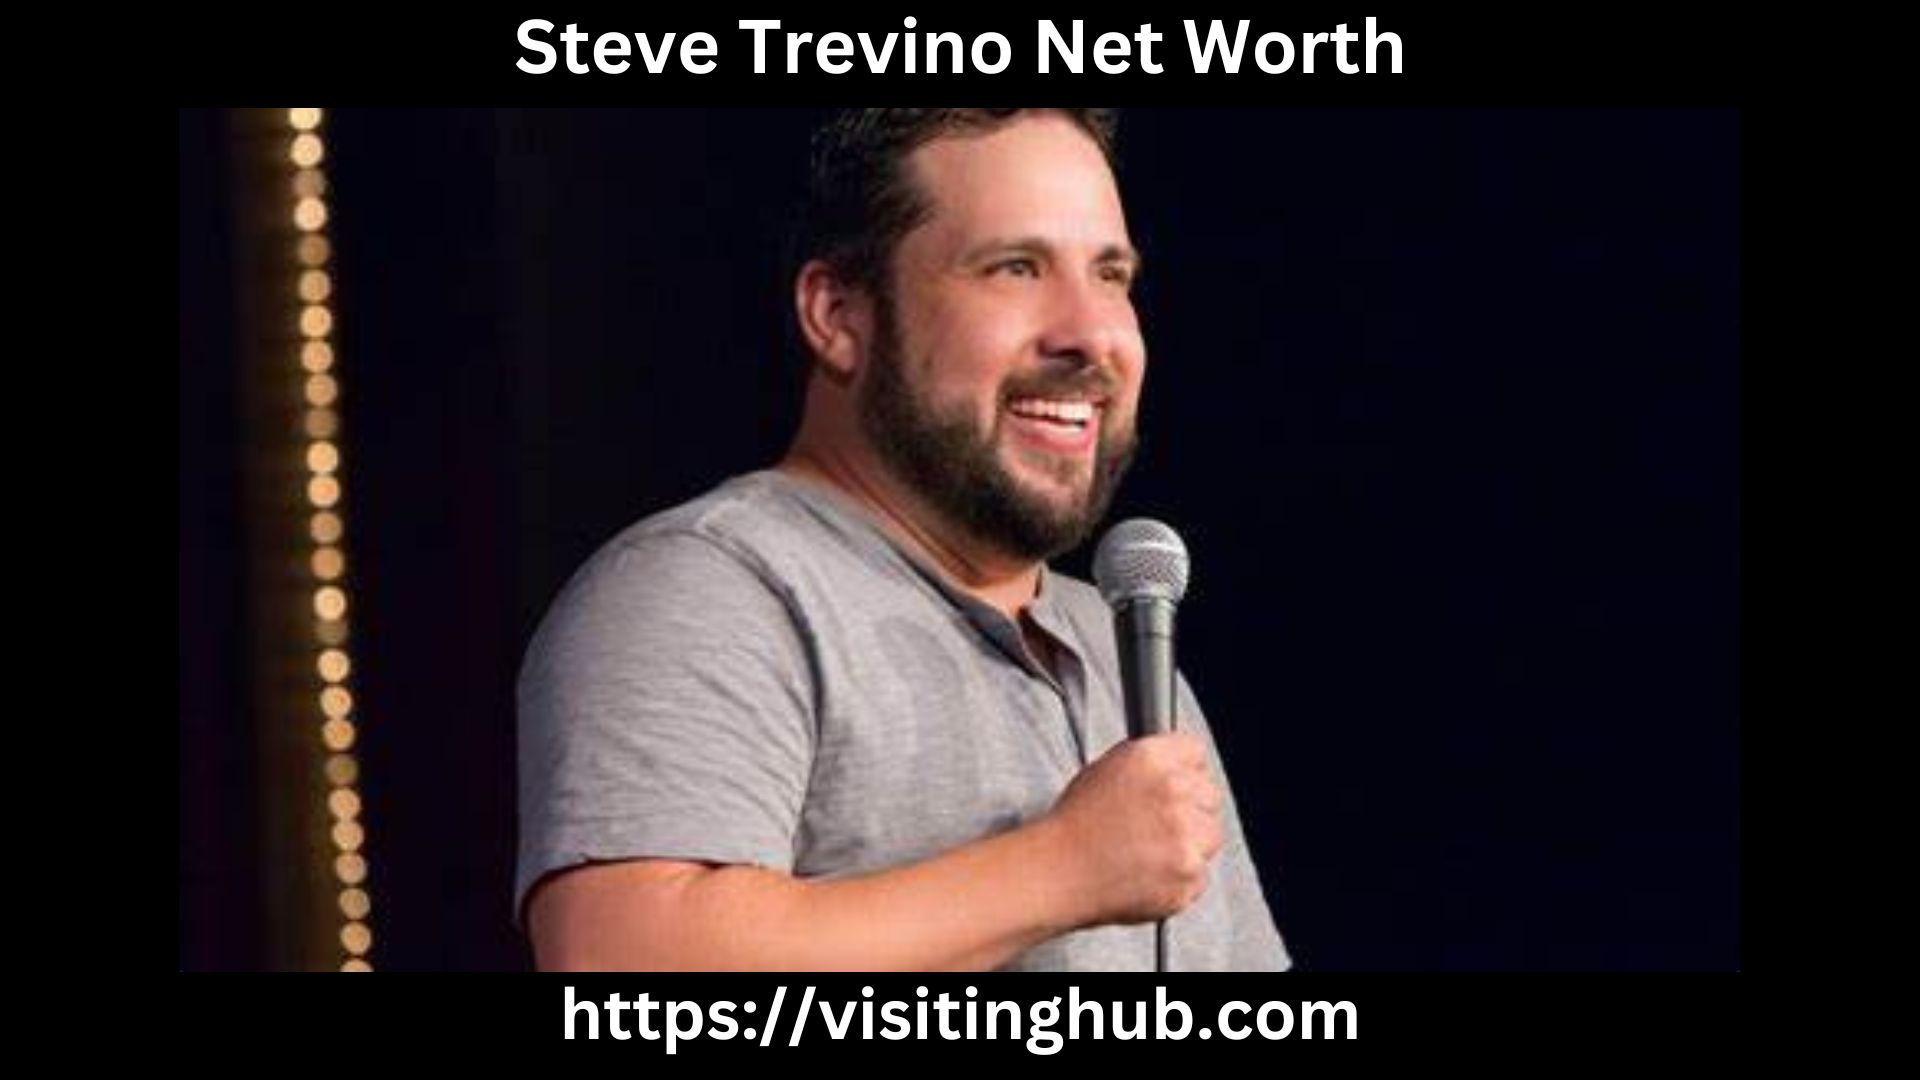 Steve Trevino Net Worth